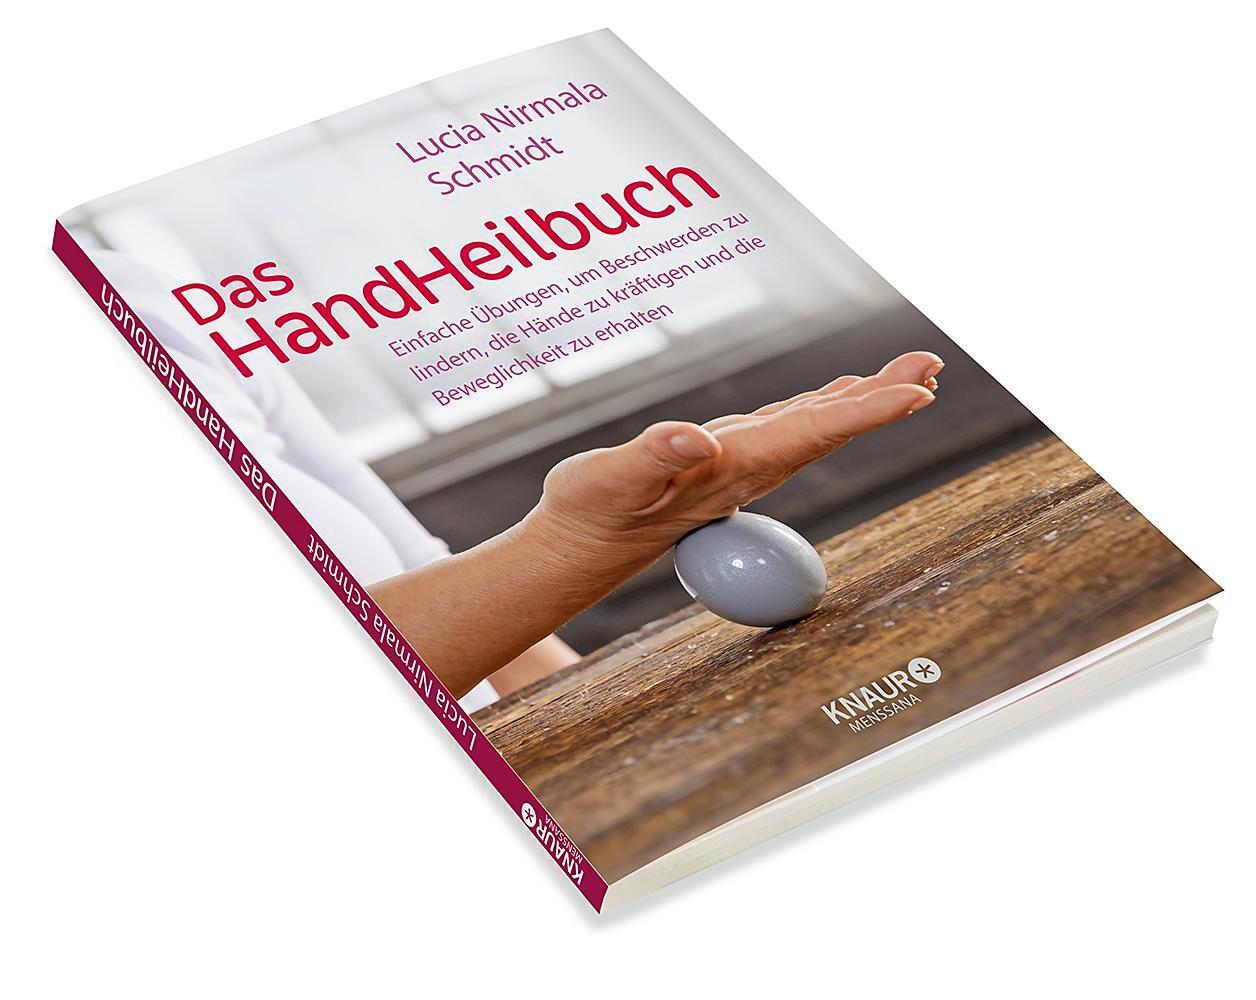 Bild: 9783426658550 | Das HandHeilbuch | Lucia Nirmala Schmidt | Taschenbuch | 96 S. | 2020